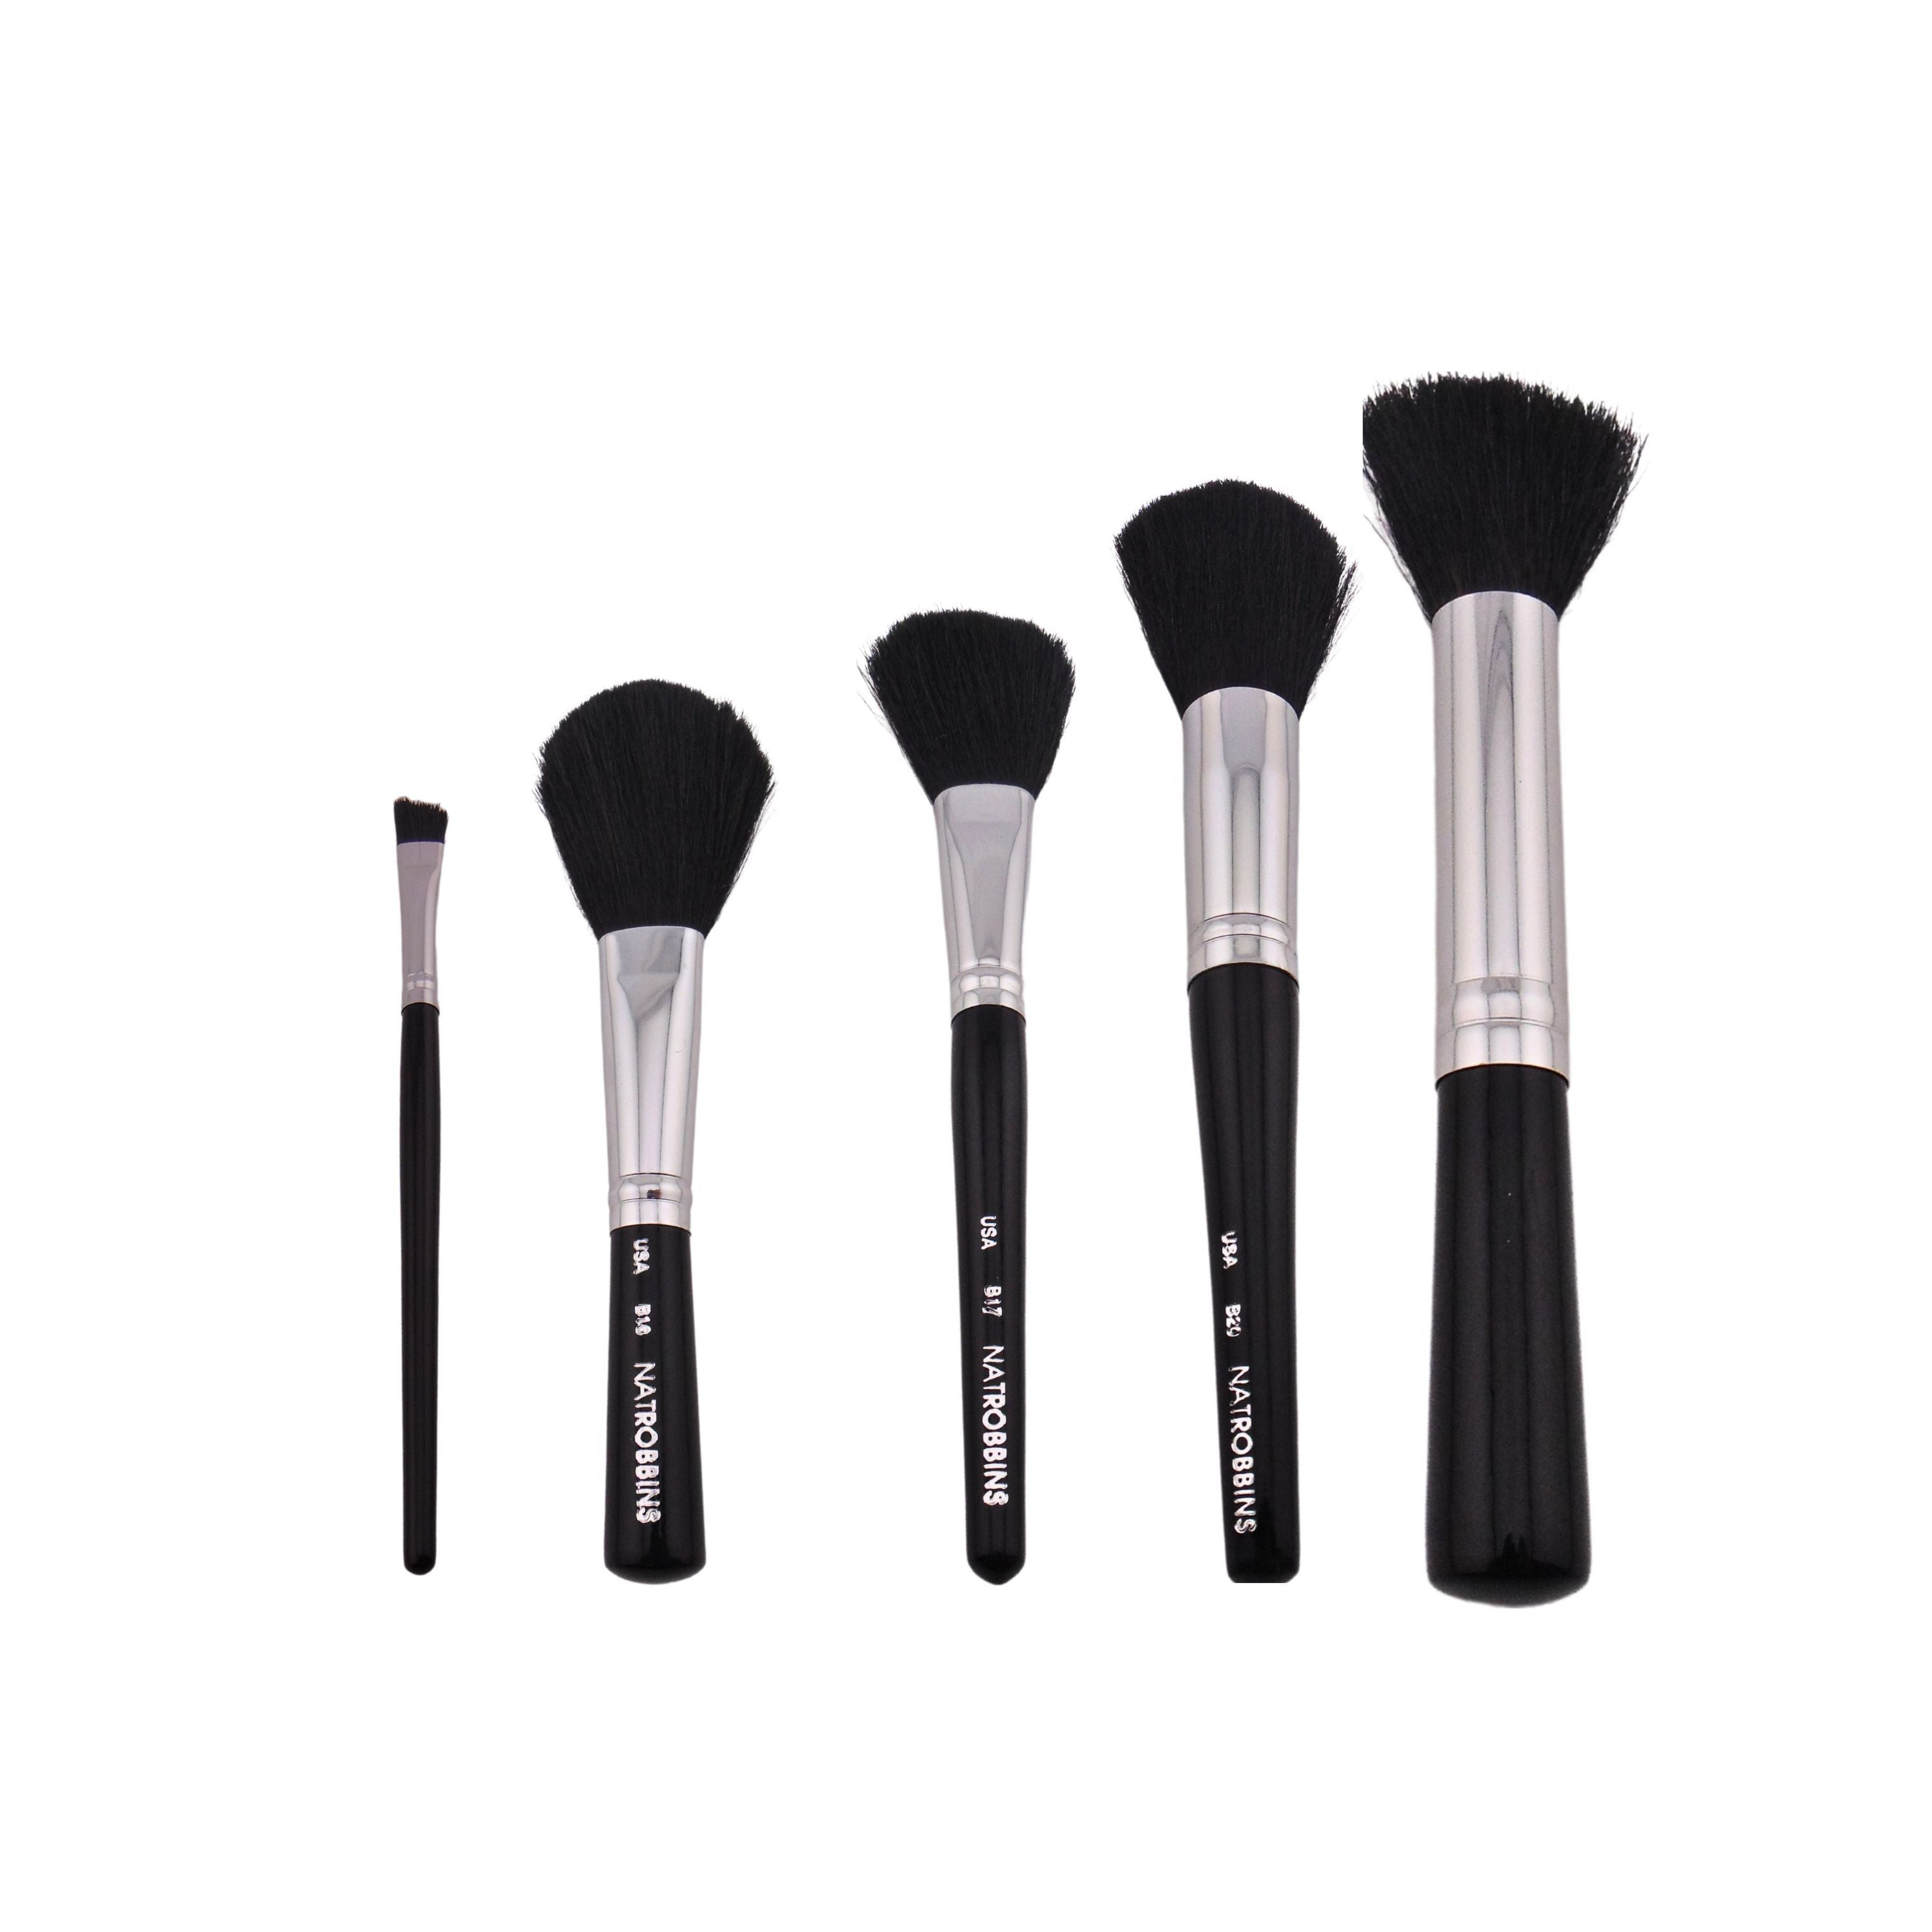 Nat Robbins Makeup Brushes Set of 5 (Natural Bristles B12, B17, B18, B20, and Synthetic Bristles B5)